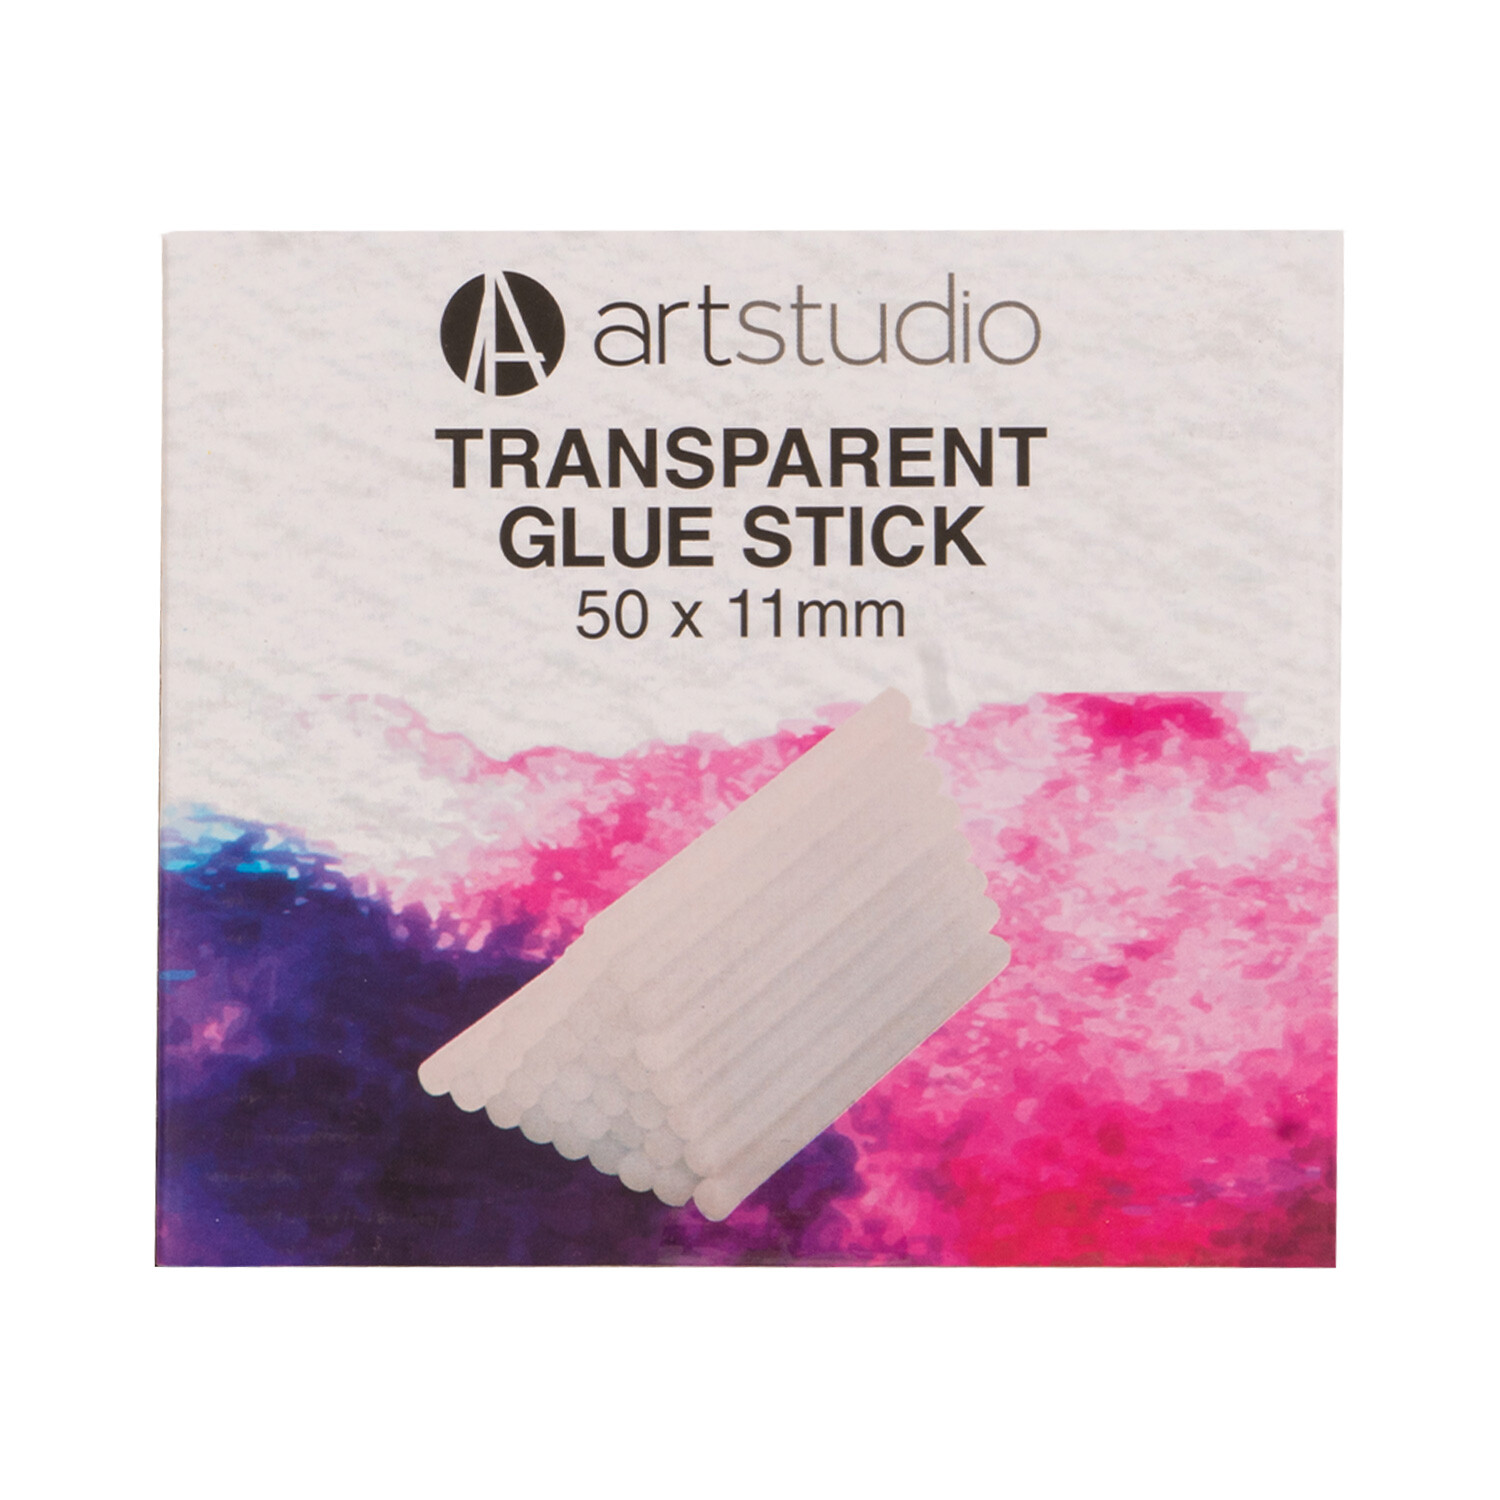 Art Studio Transparent Glue Stick - 50 / 11cm Image